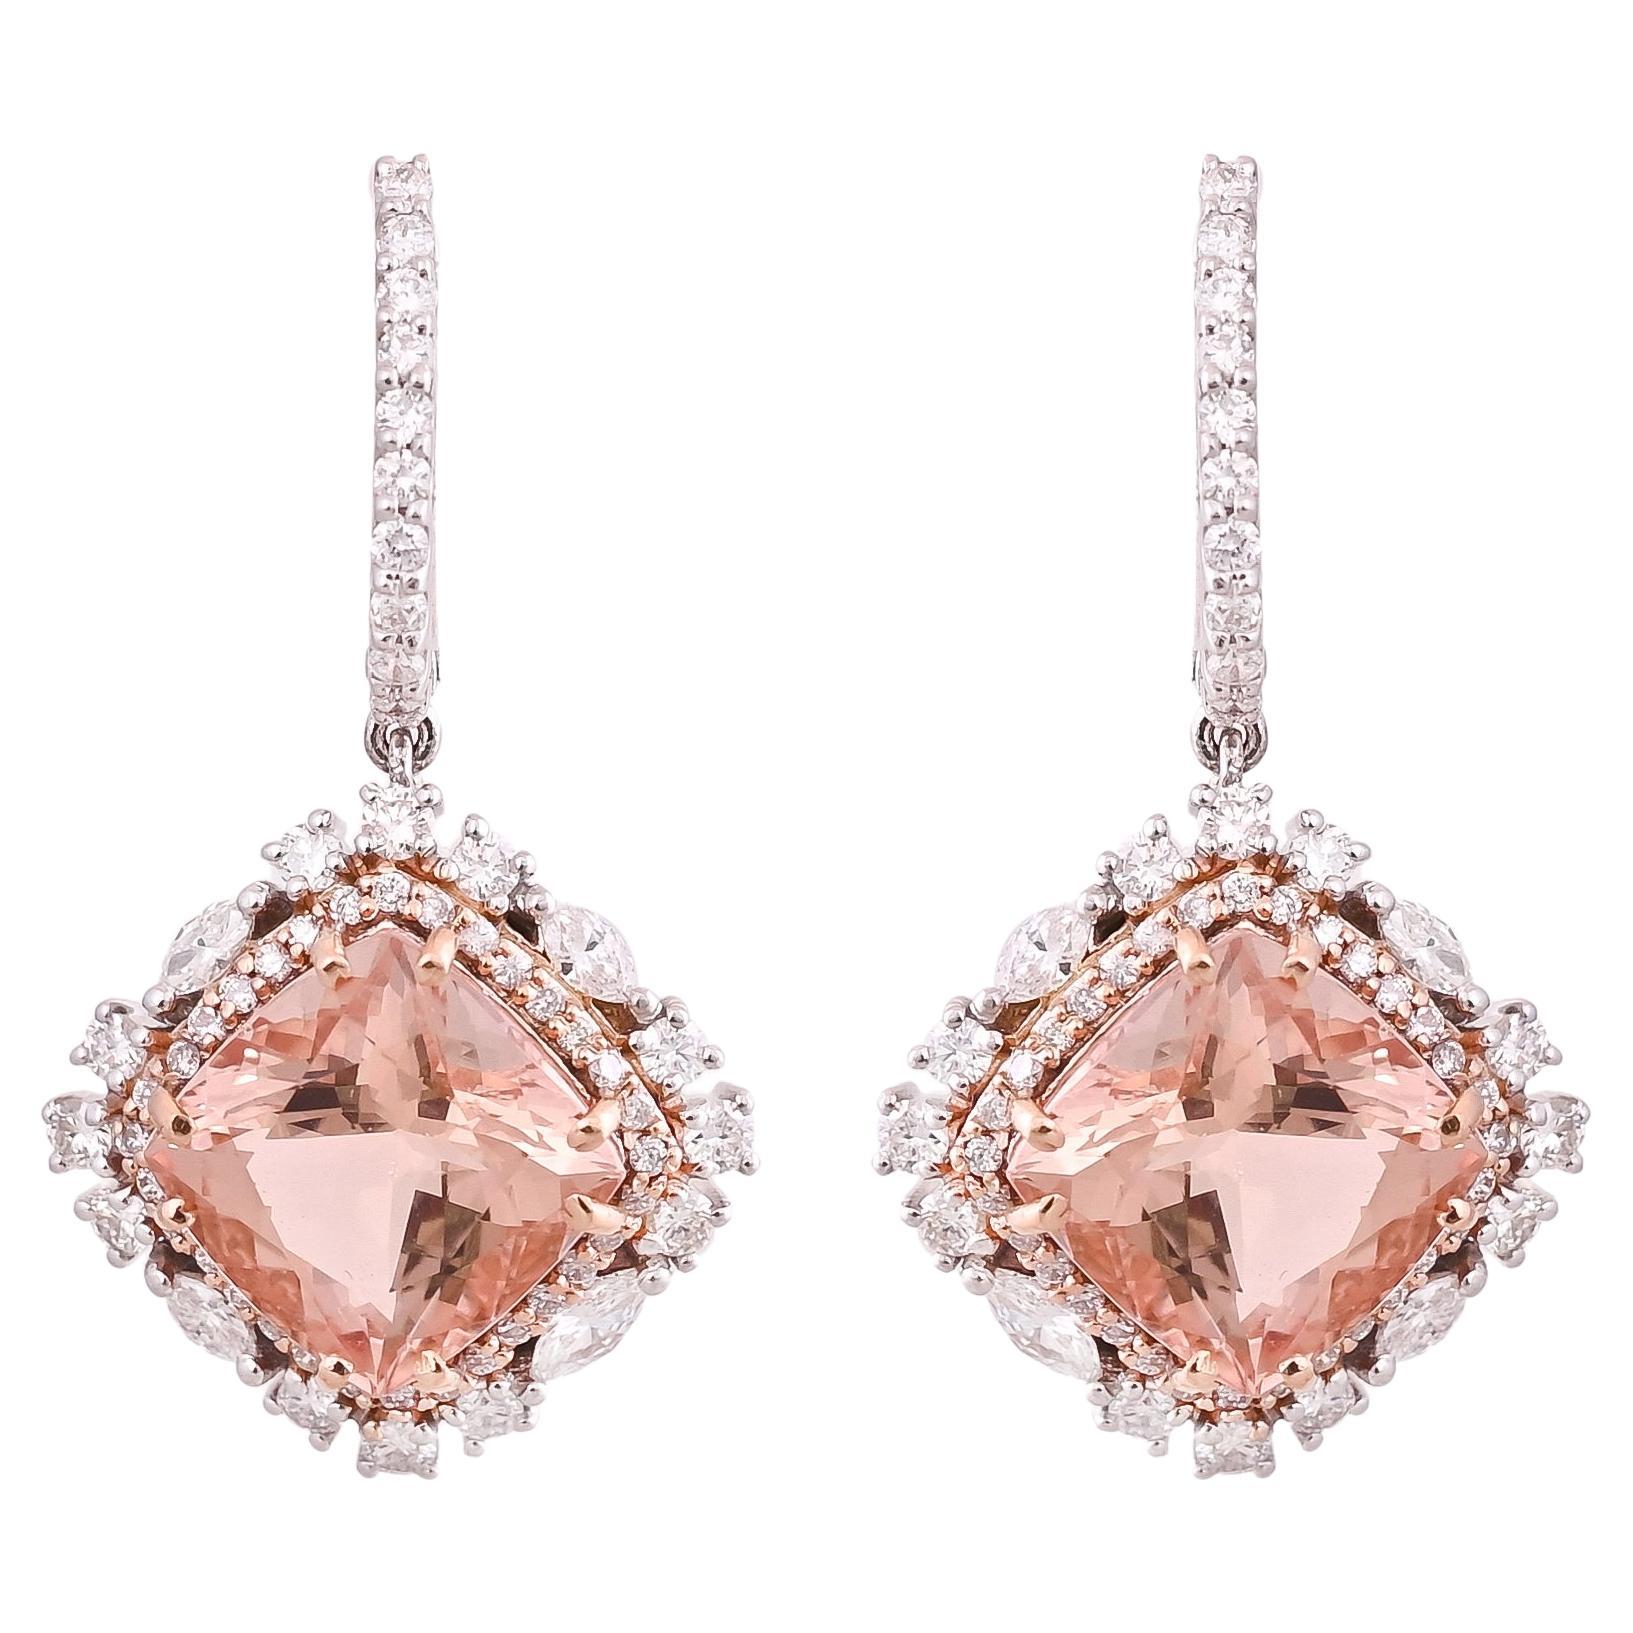 Pendants d'oreilles en or rose 18 carats, morganites naturelles taille coussin et diamants sertis